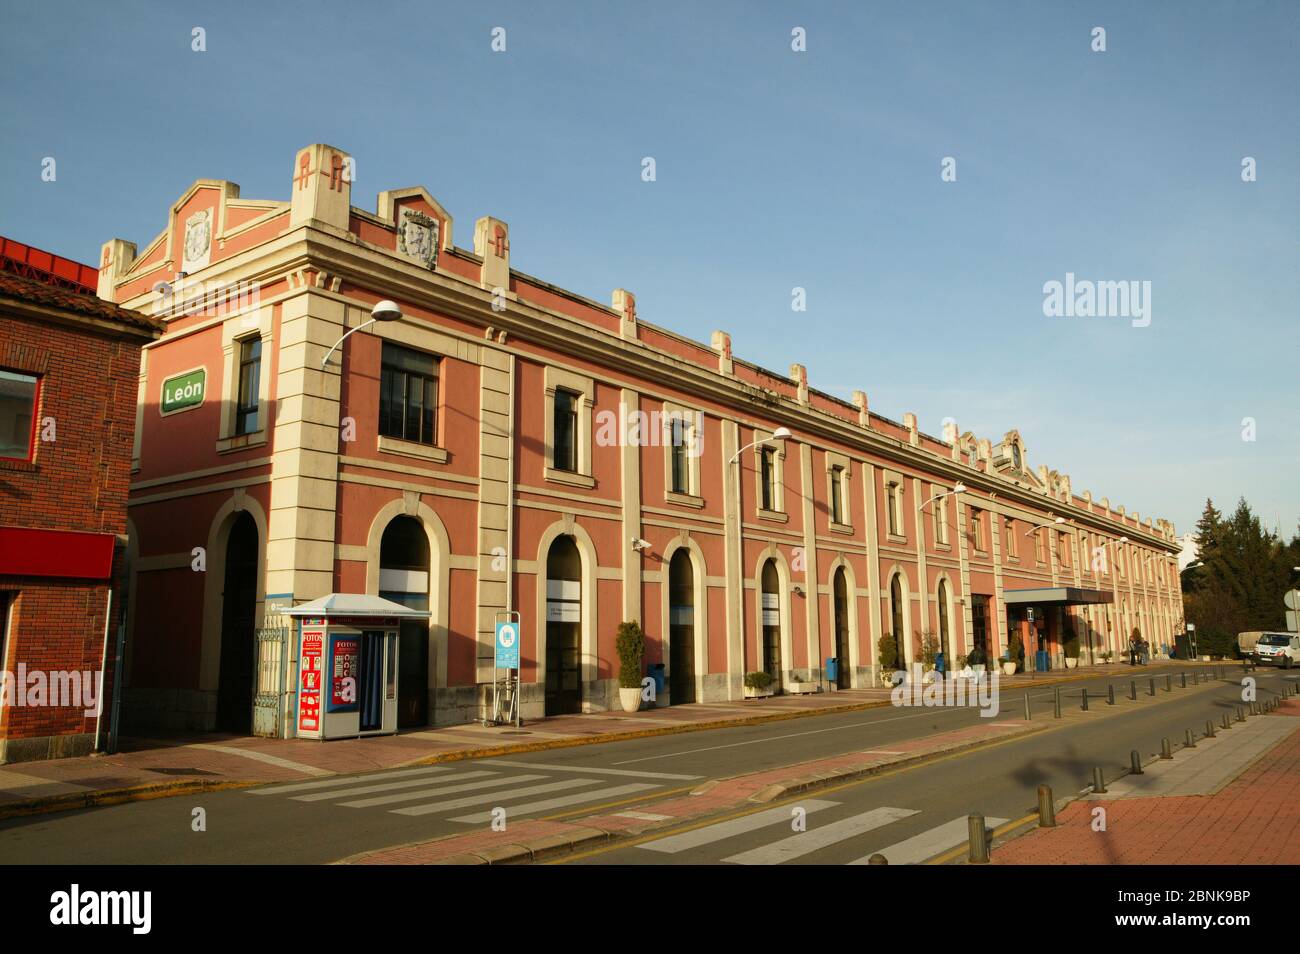 Baldacchino della stazione ferroviaria di León Foto Stock